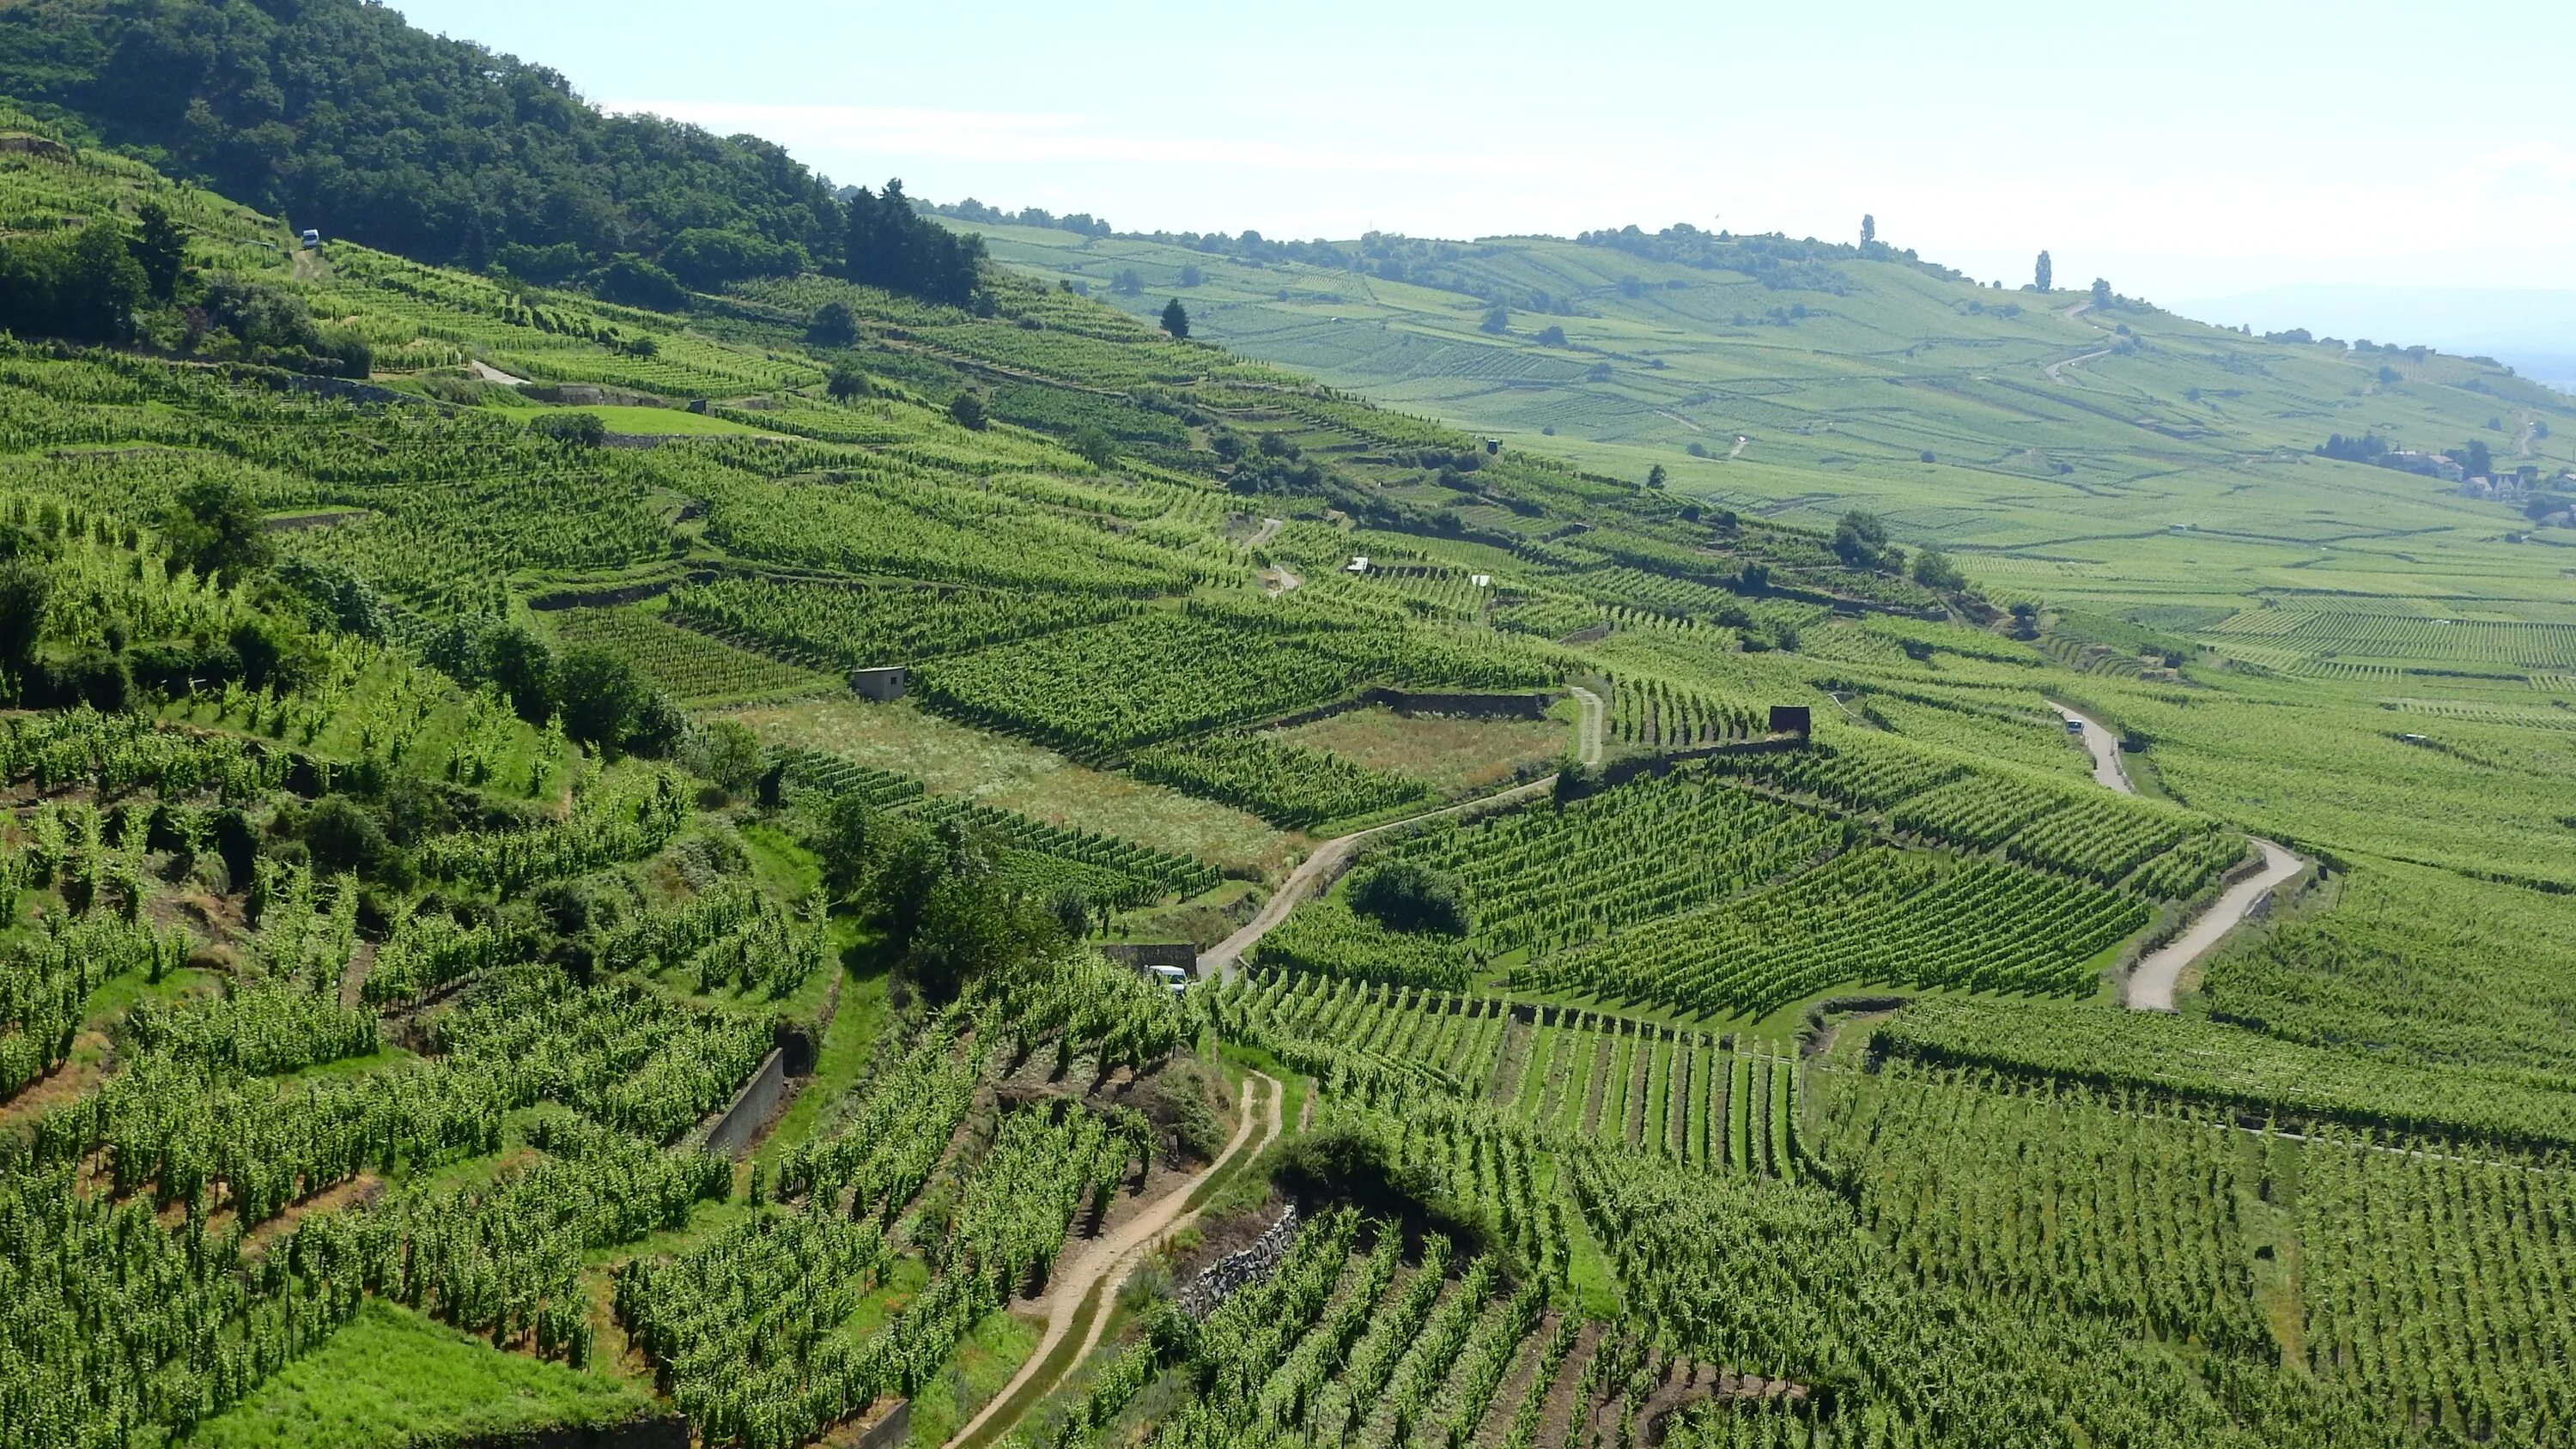 Виды плантаций. Виноградники Лаво в Швейцарии. Долина Рейна виноградники. Виноградные поля Франции. Виноградные плантации во Франции.